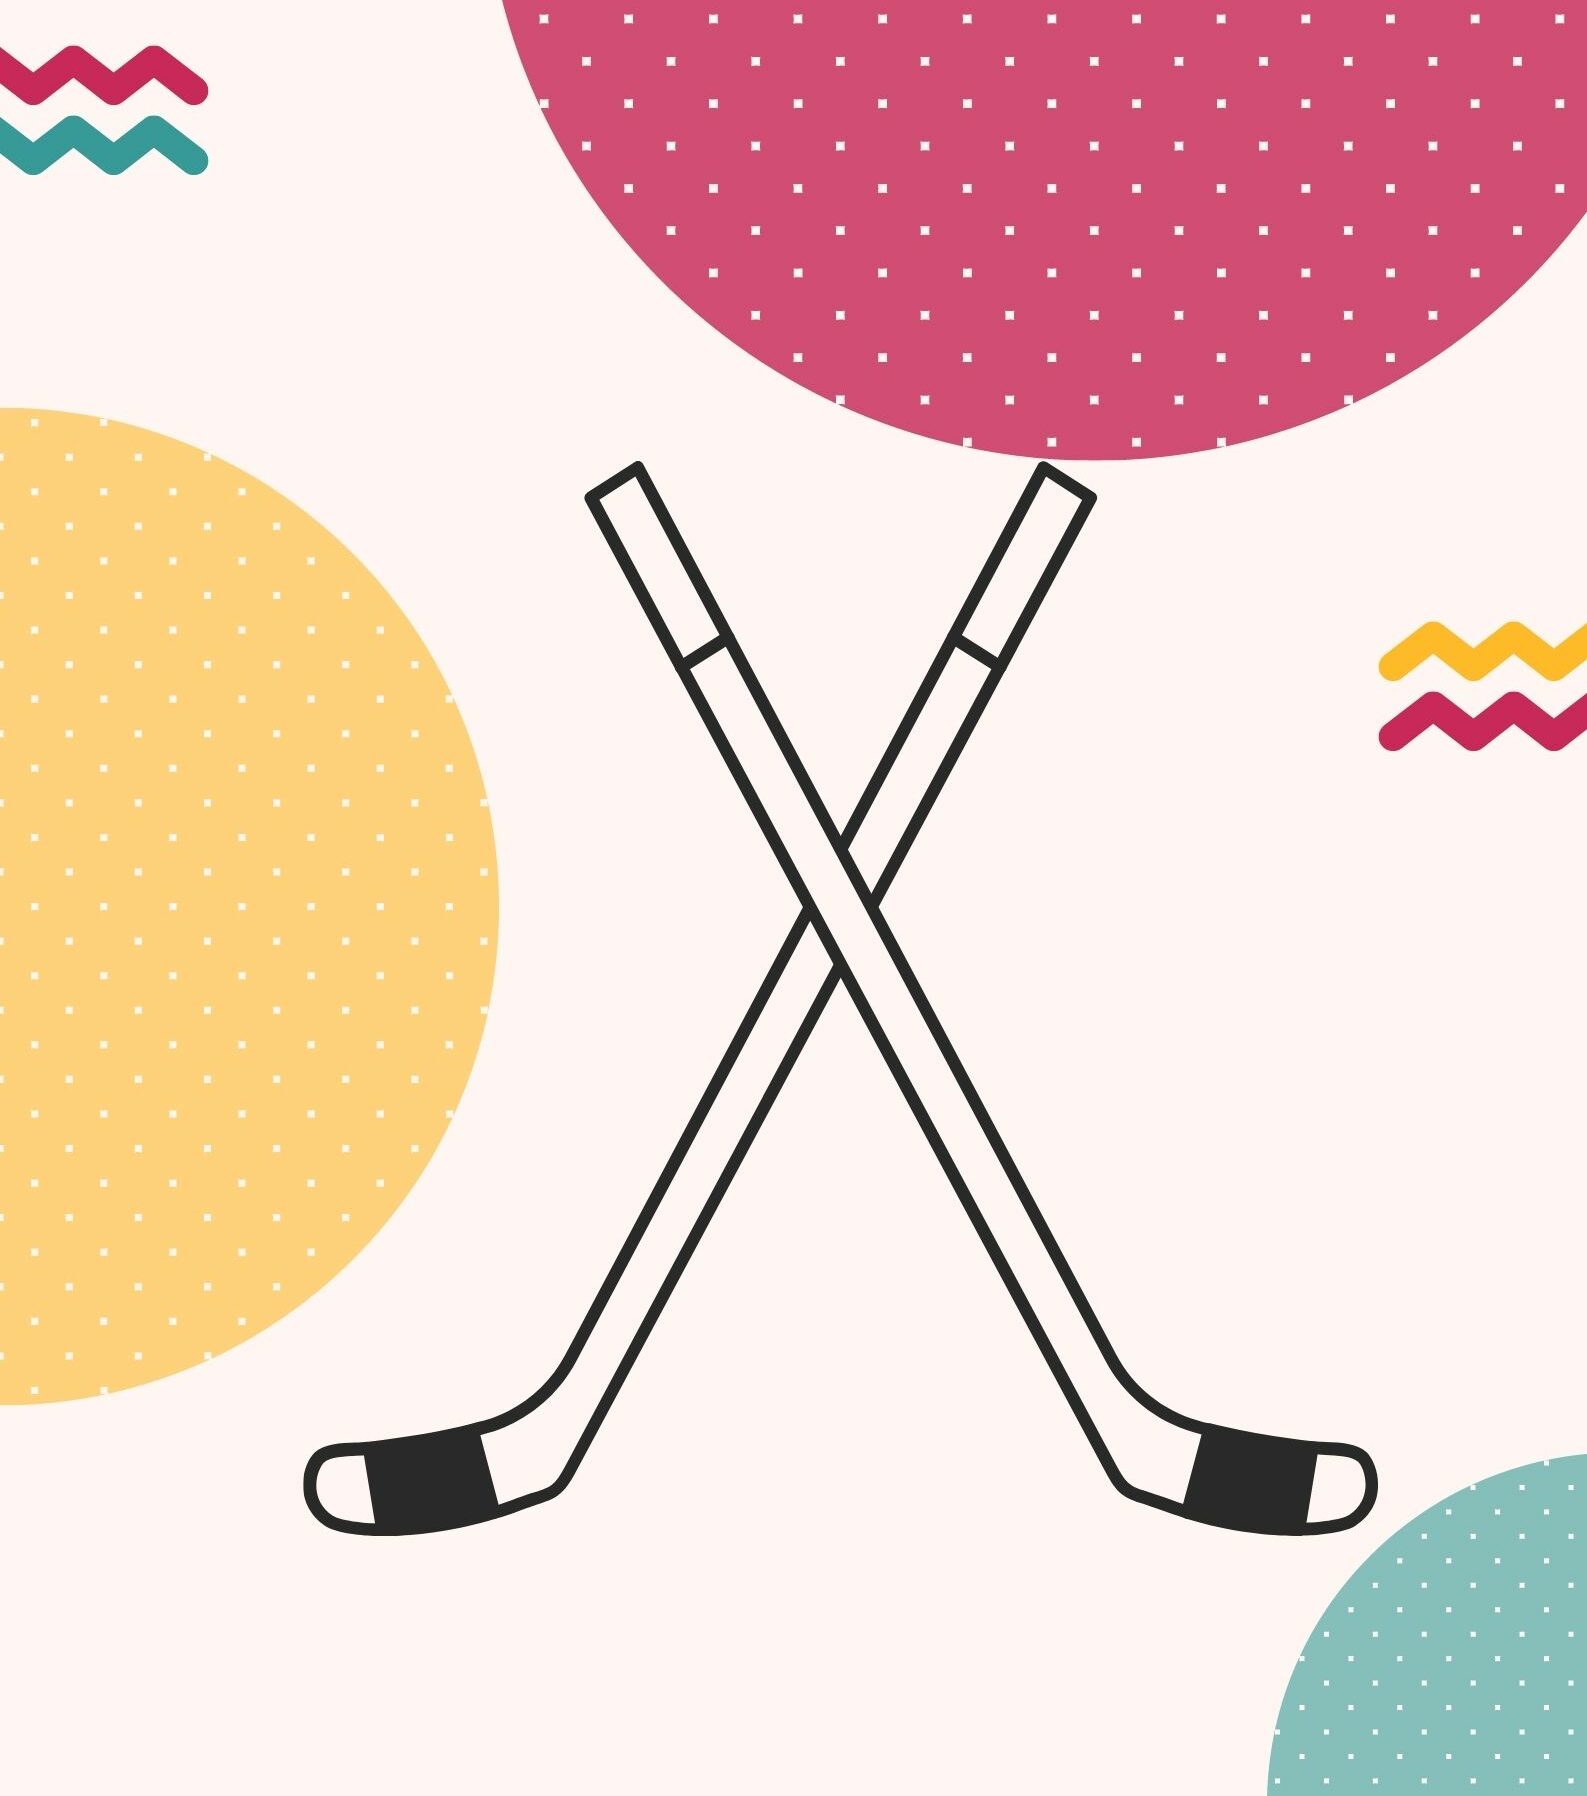 Kolorowy plakat z ikoną hokeja zapraszający na testy sprawnościowe